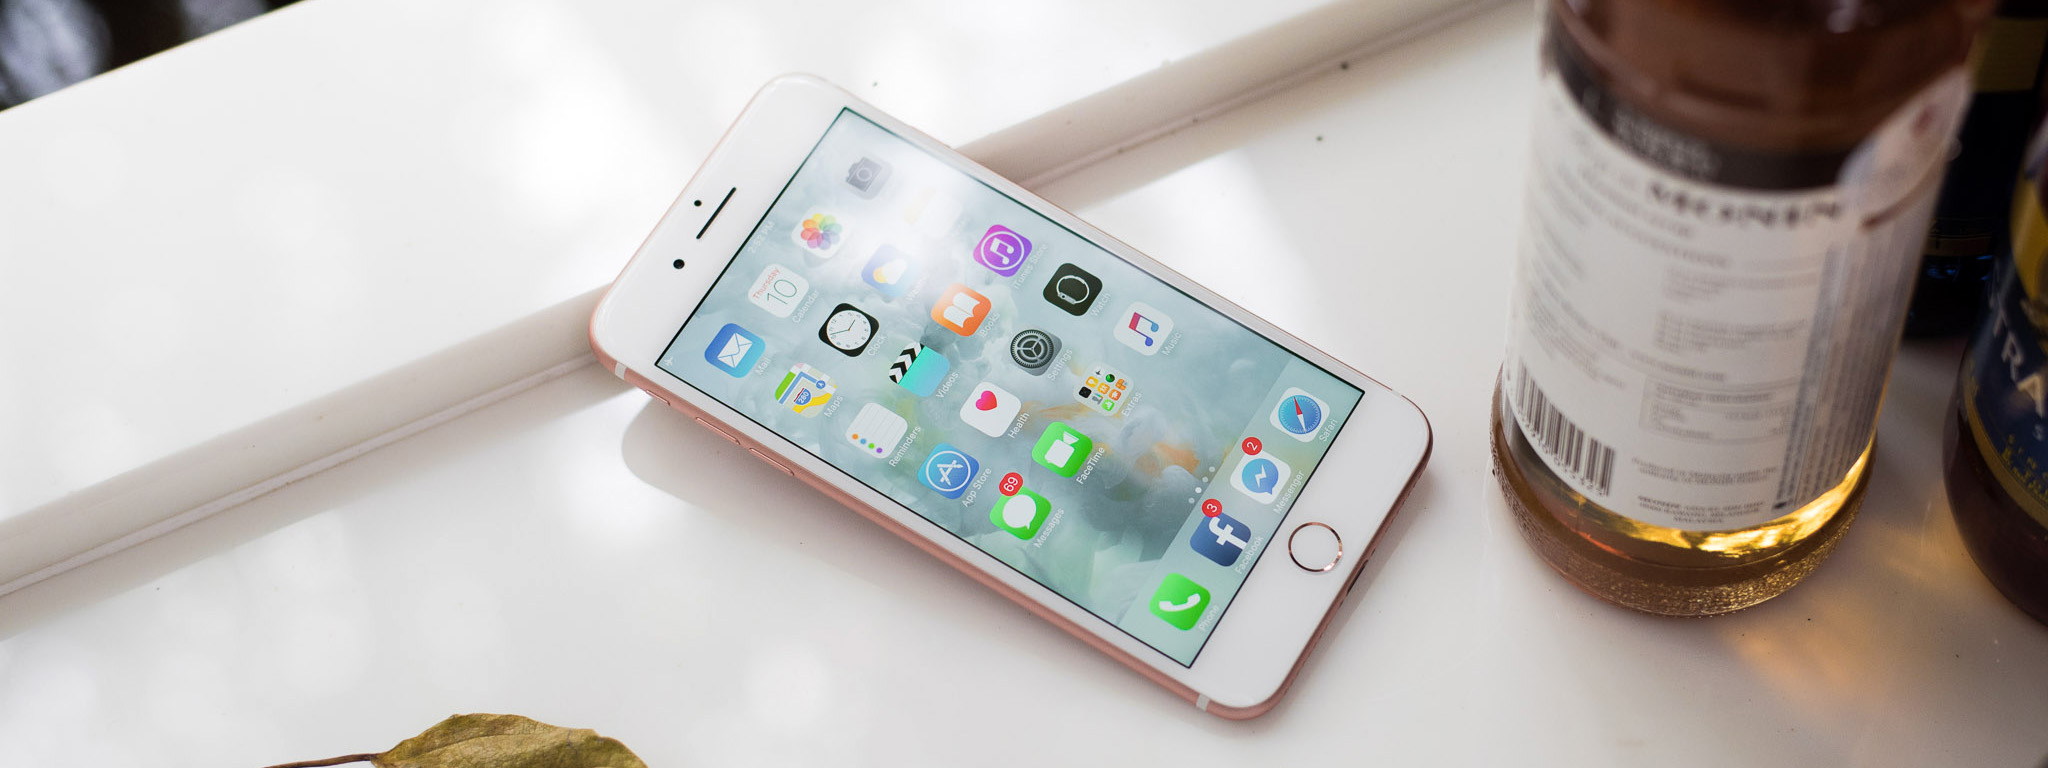 Apple xác nhận iPhone sẽ chạy chậm đi khi pin chai theo thời gian, anh em nghĩ sao?